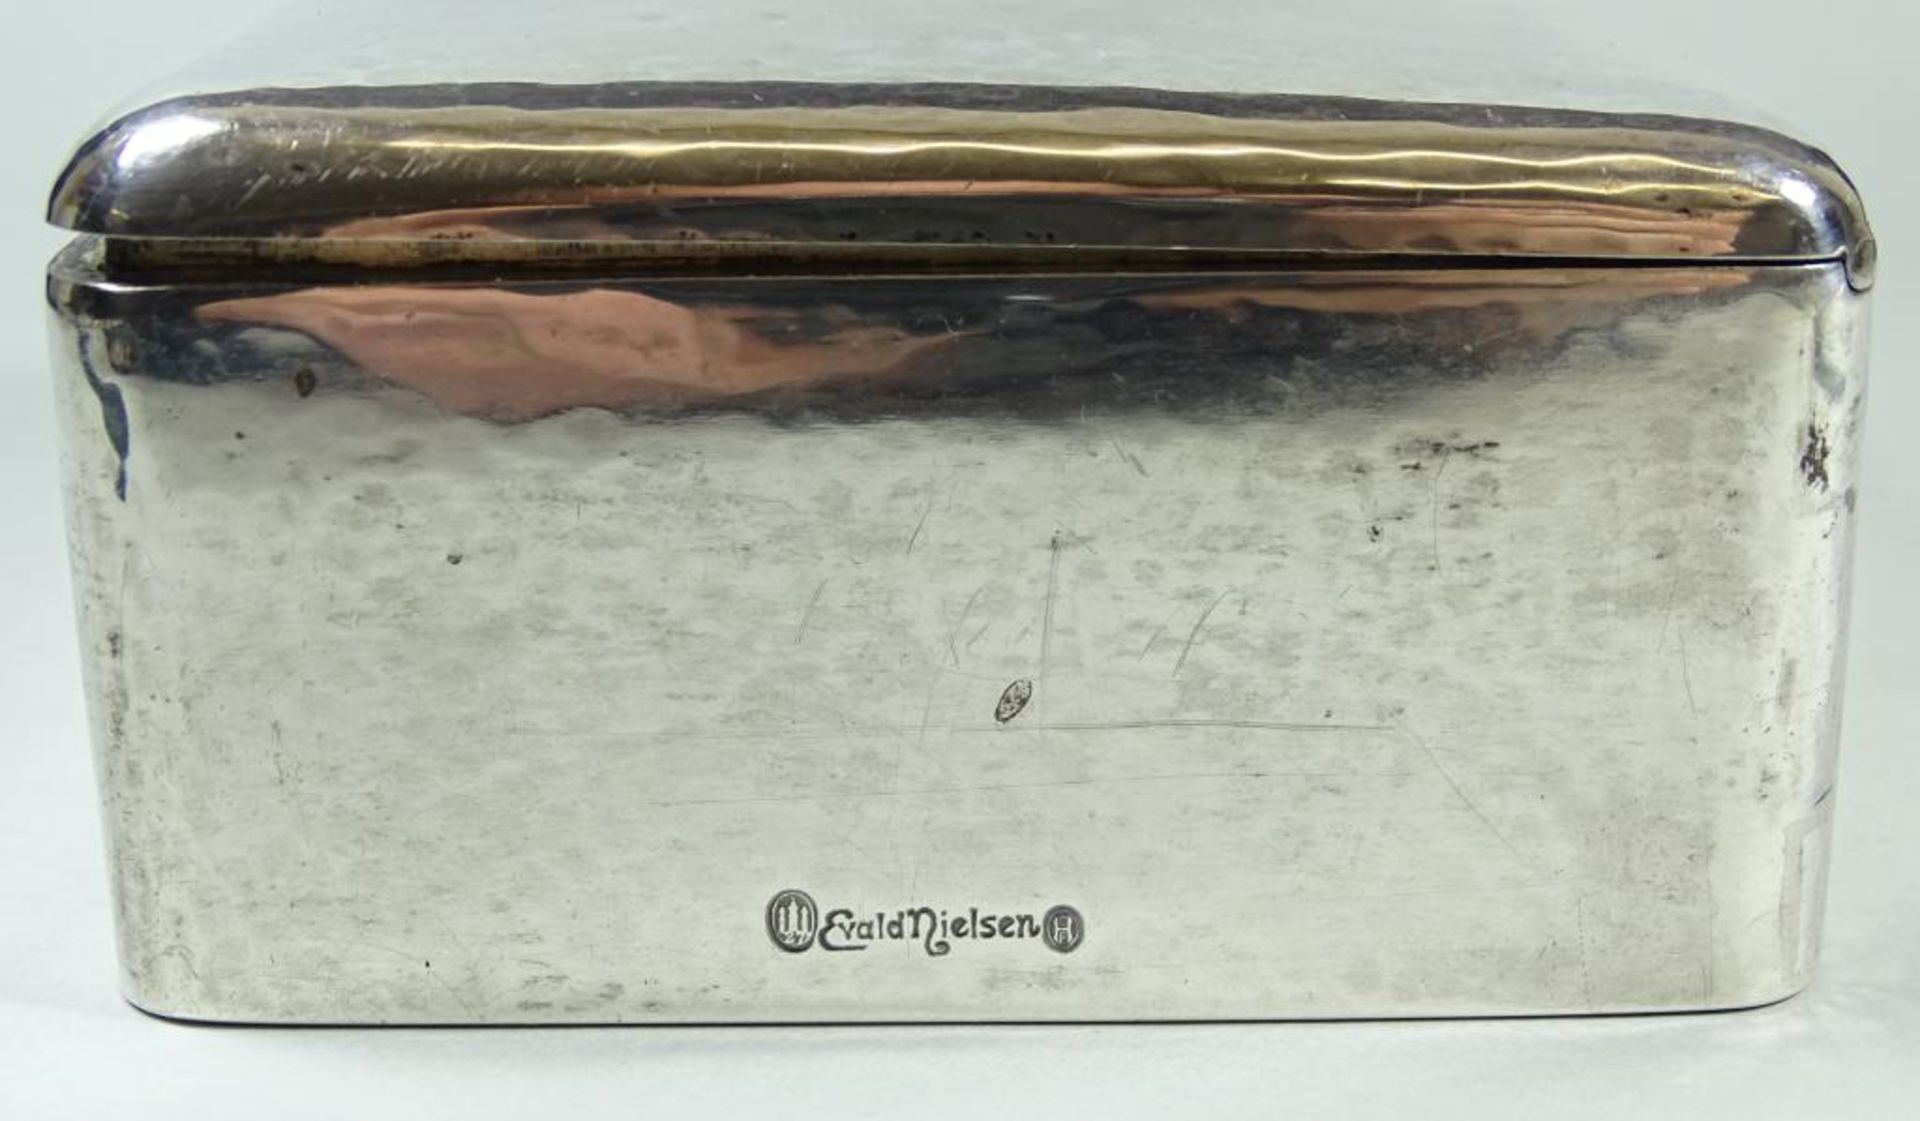 Zigaretten Dose von Evald Nielsen Dänemark,1927,330gr.,Hammerschlagdekor,H-4,5cm,11,5x9,2cm,1x Delle - Bild 5 aus 8